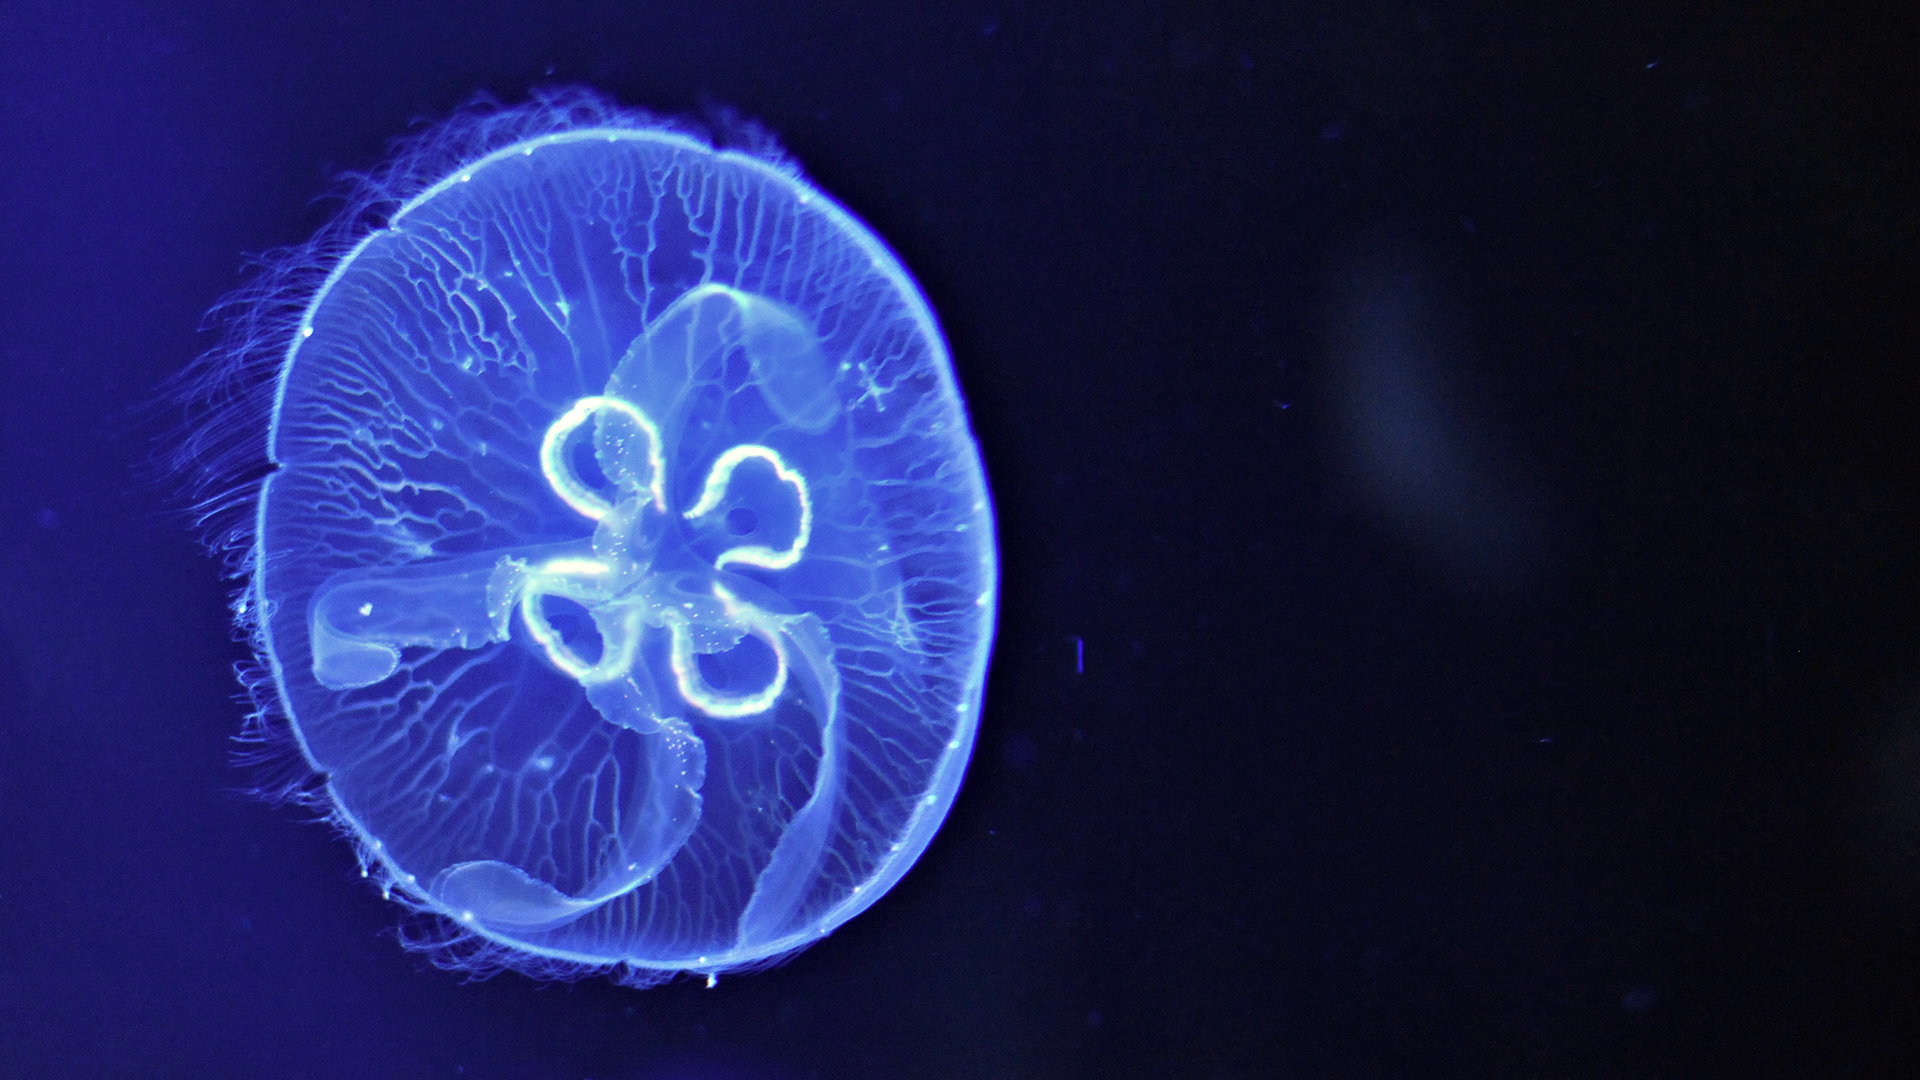 Лучевая симметрия медузы